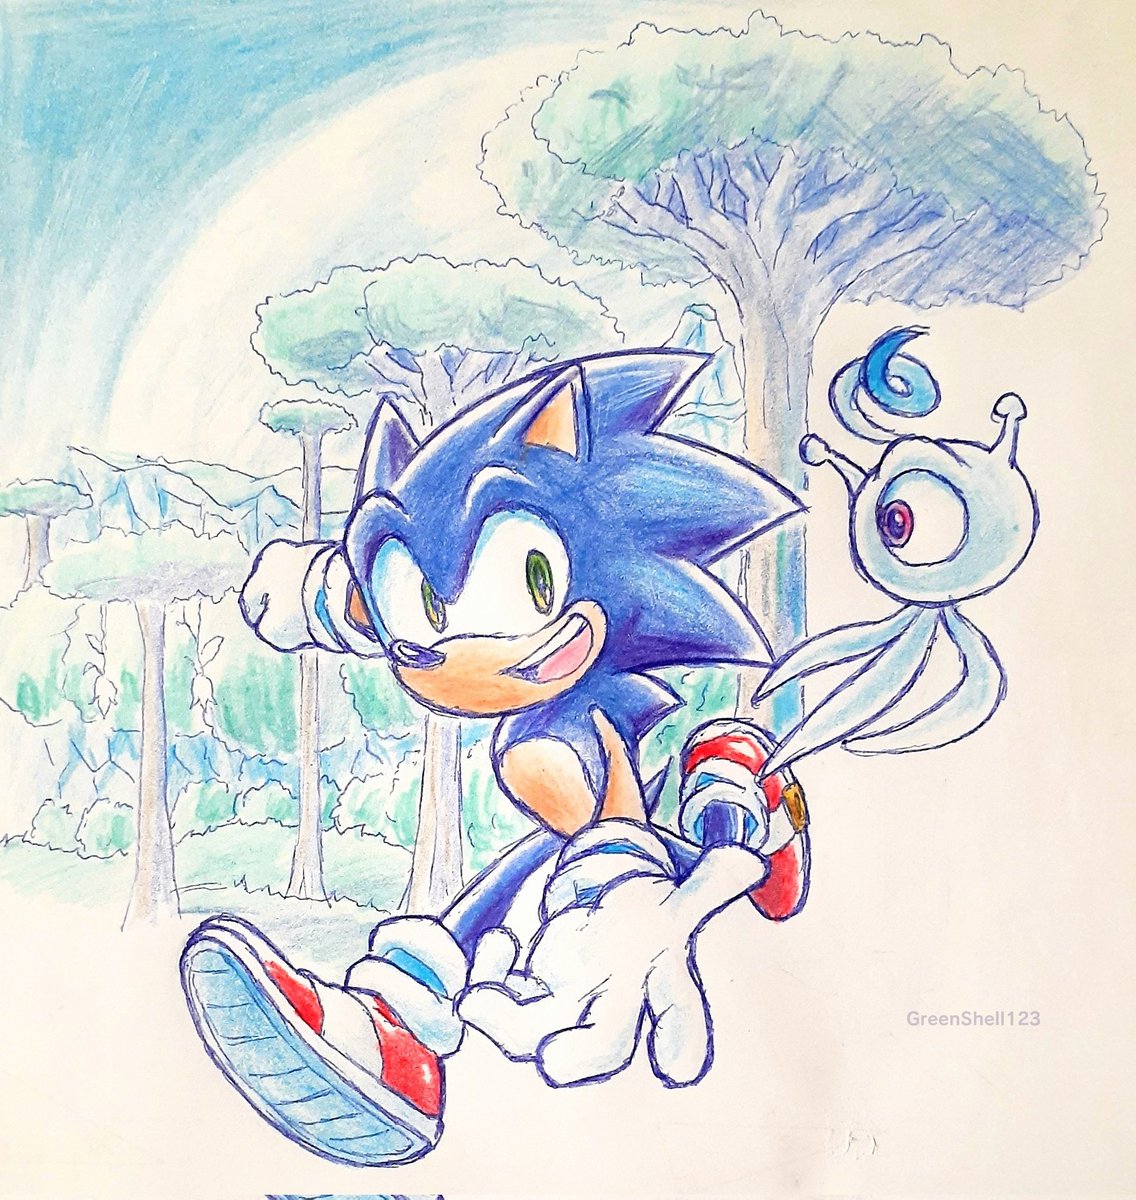 ソニック 「Sonic Colors redraw #SonicTheHedeghog」|GreenShell123のイラスト